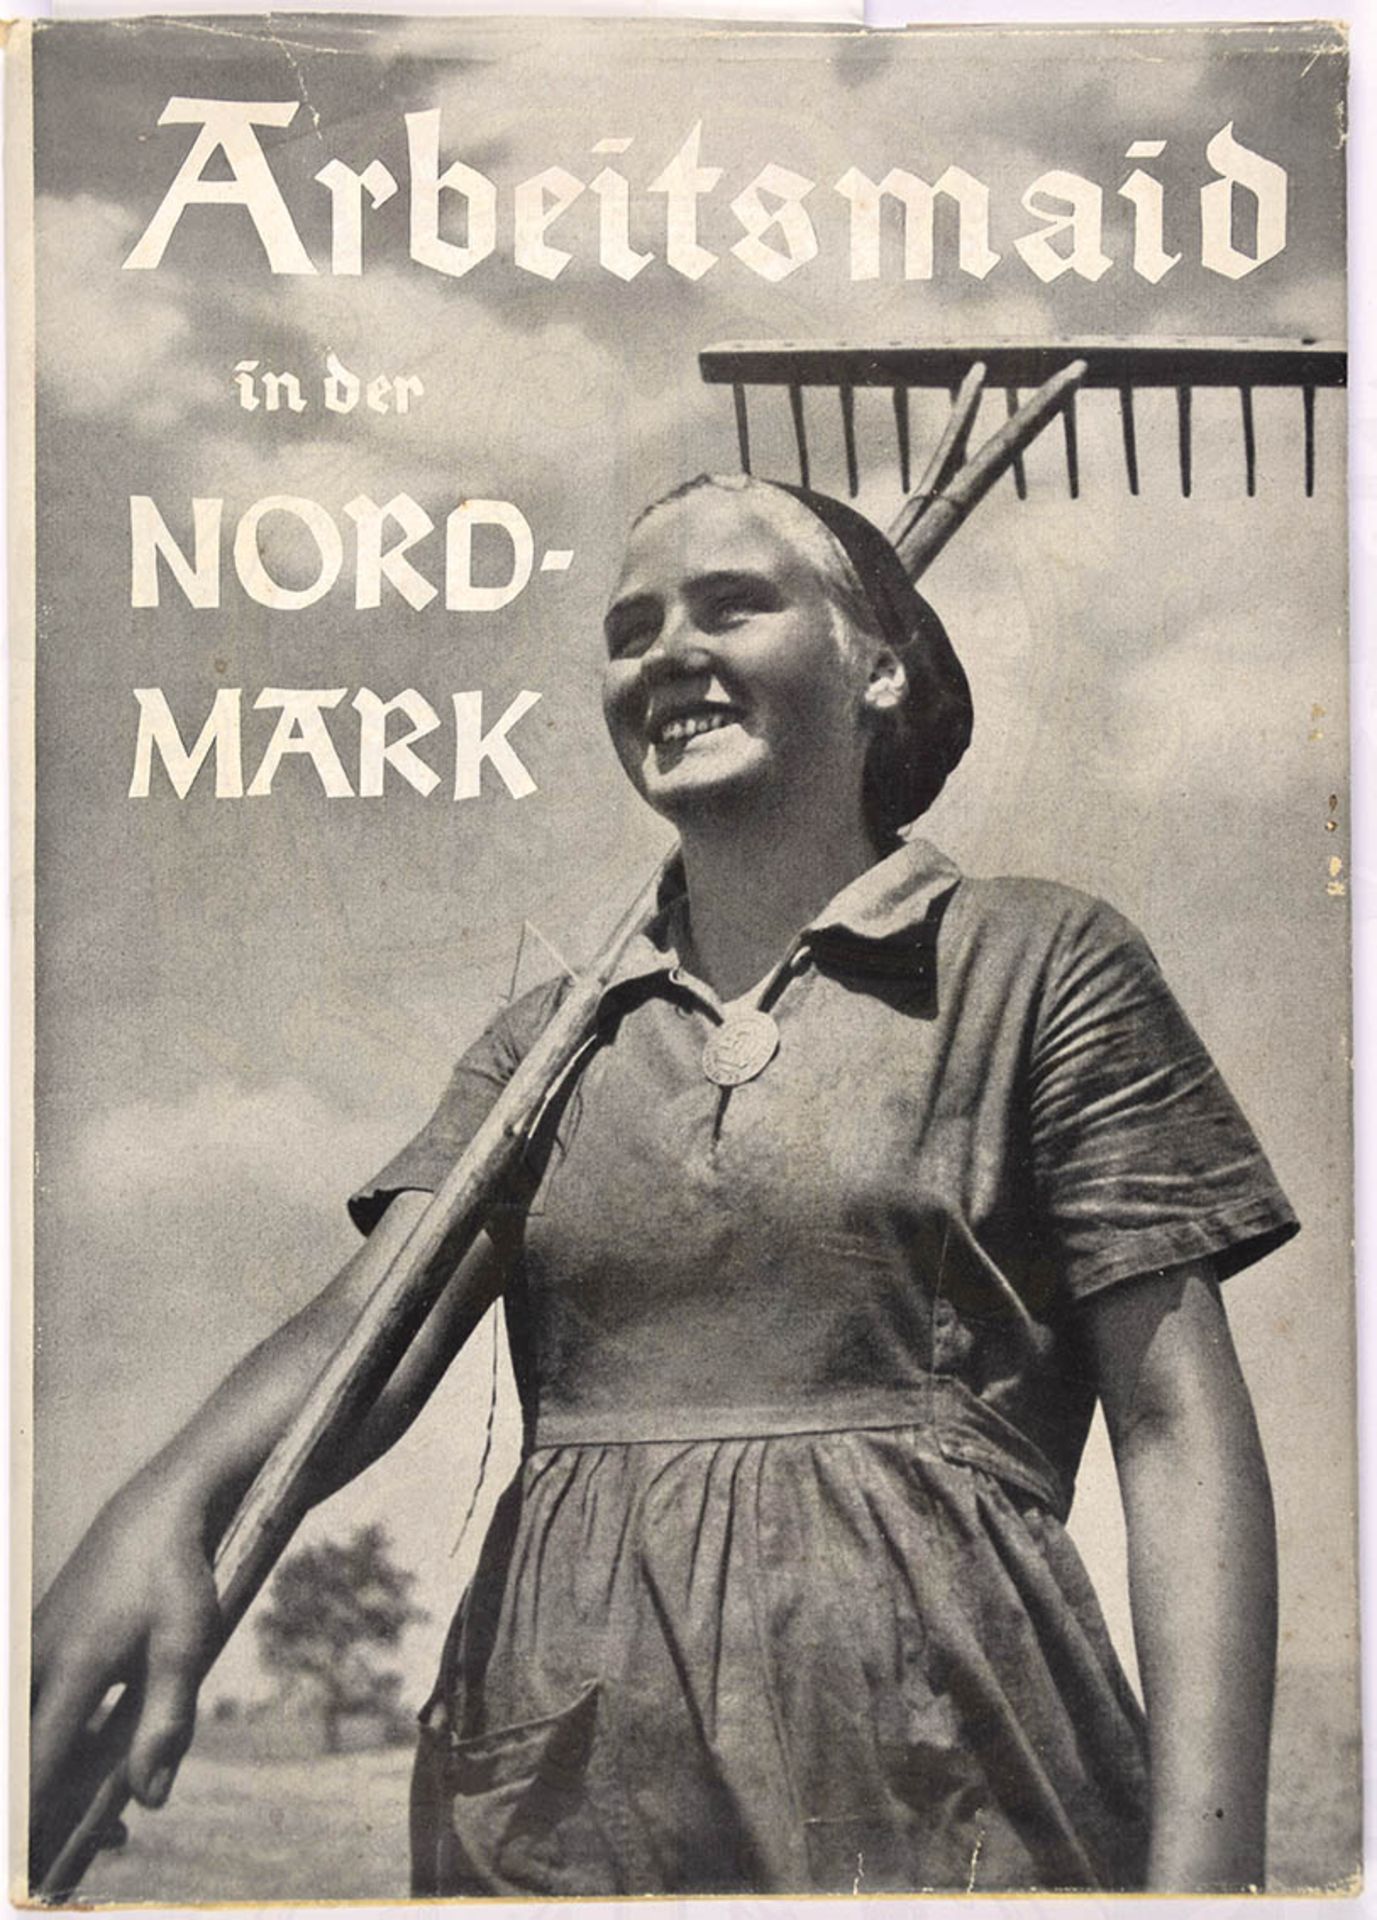 ARBEITSMAID IN DER NORDMARK, Bln. 1939, Fotoband, 80 S., bedr. Hln. m. Abb. d. Maidenbrosche, SU <